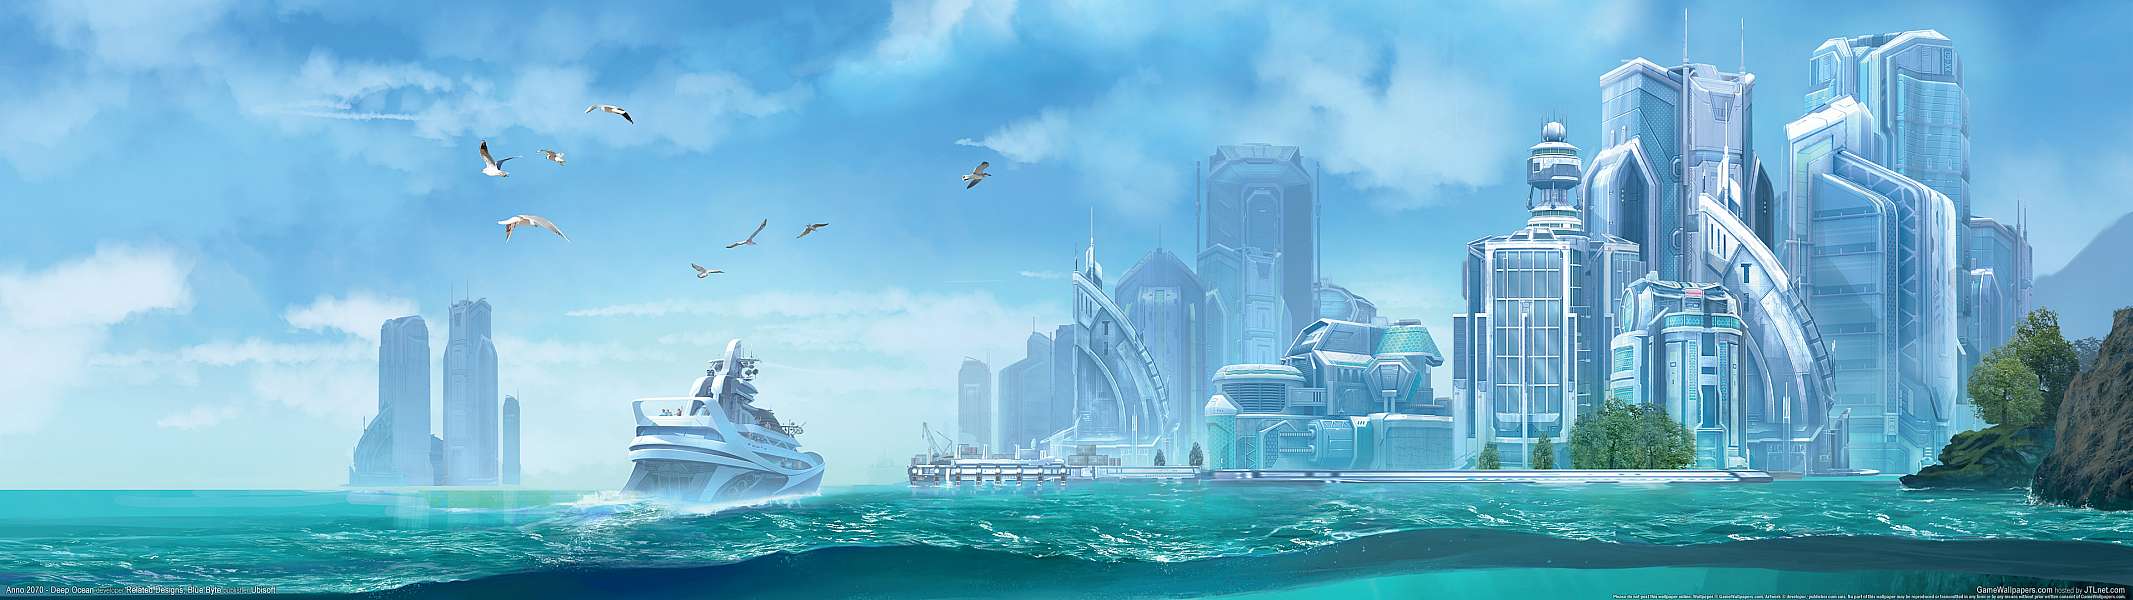 Anno 2070 - Deep Ocean dual screen fond d'cran